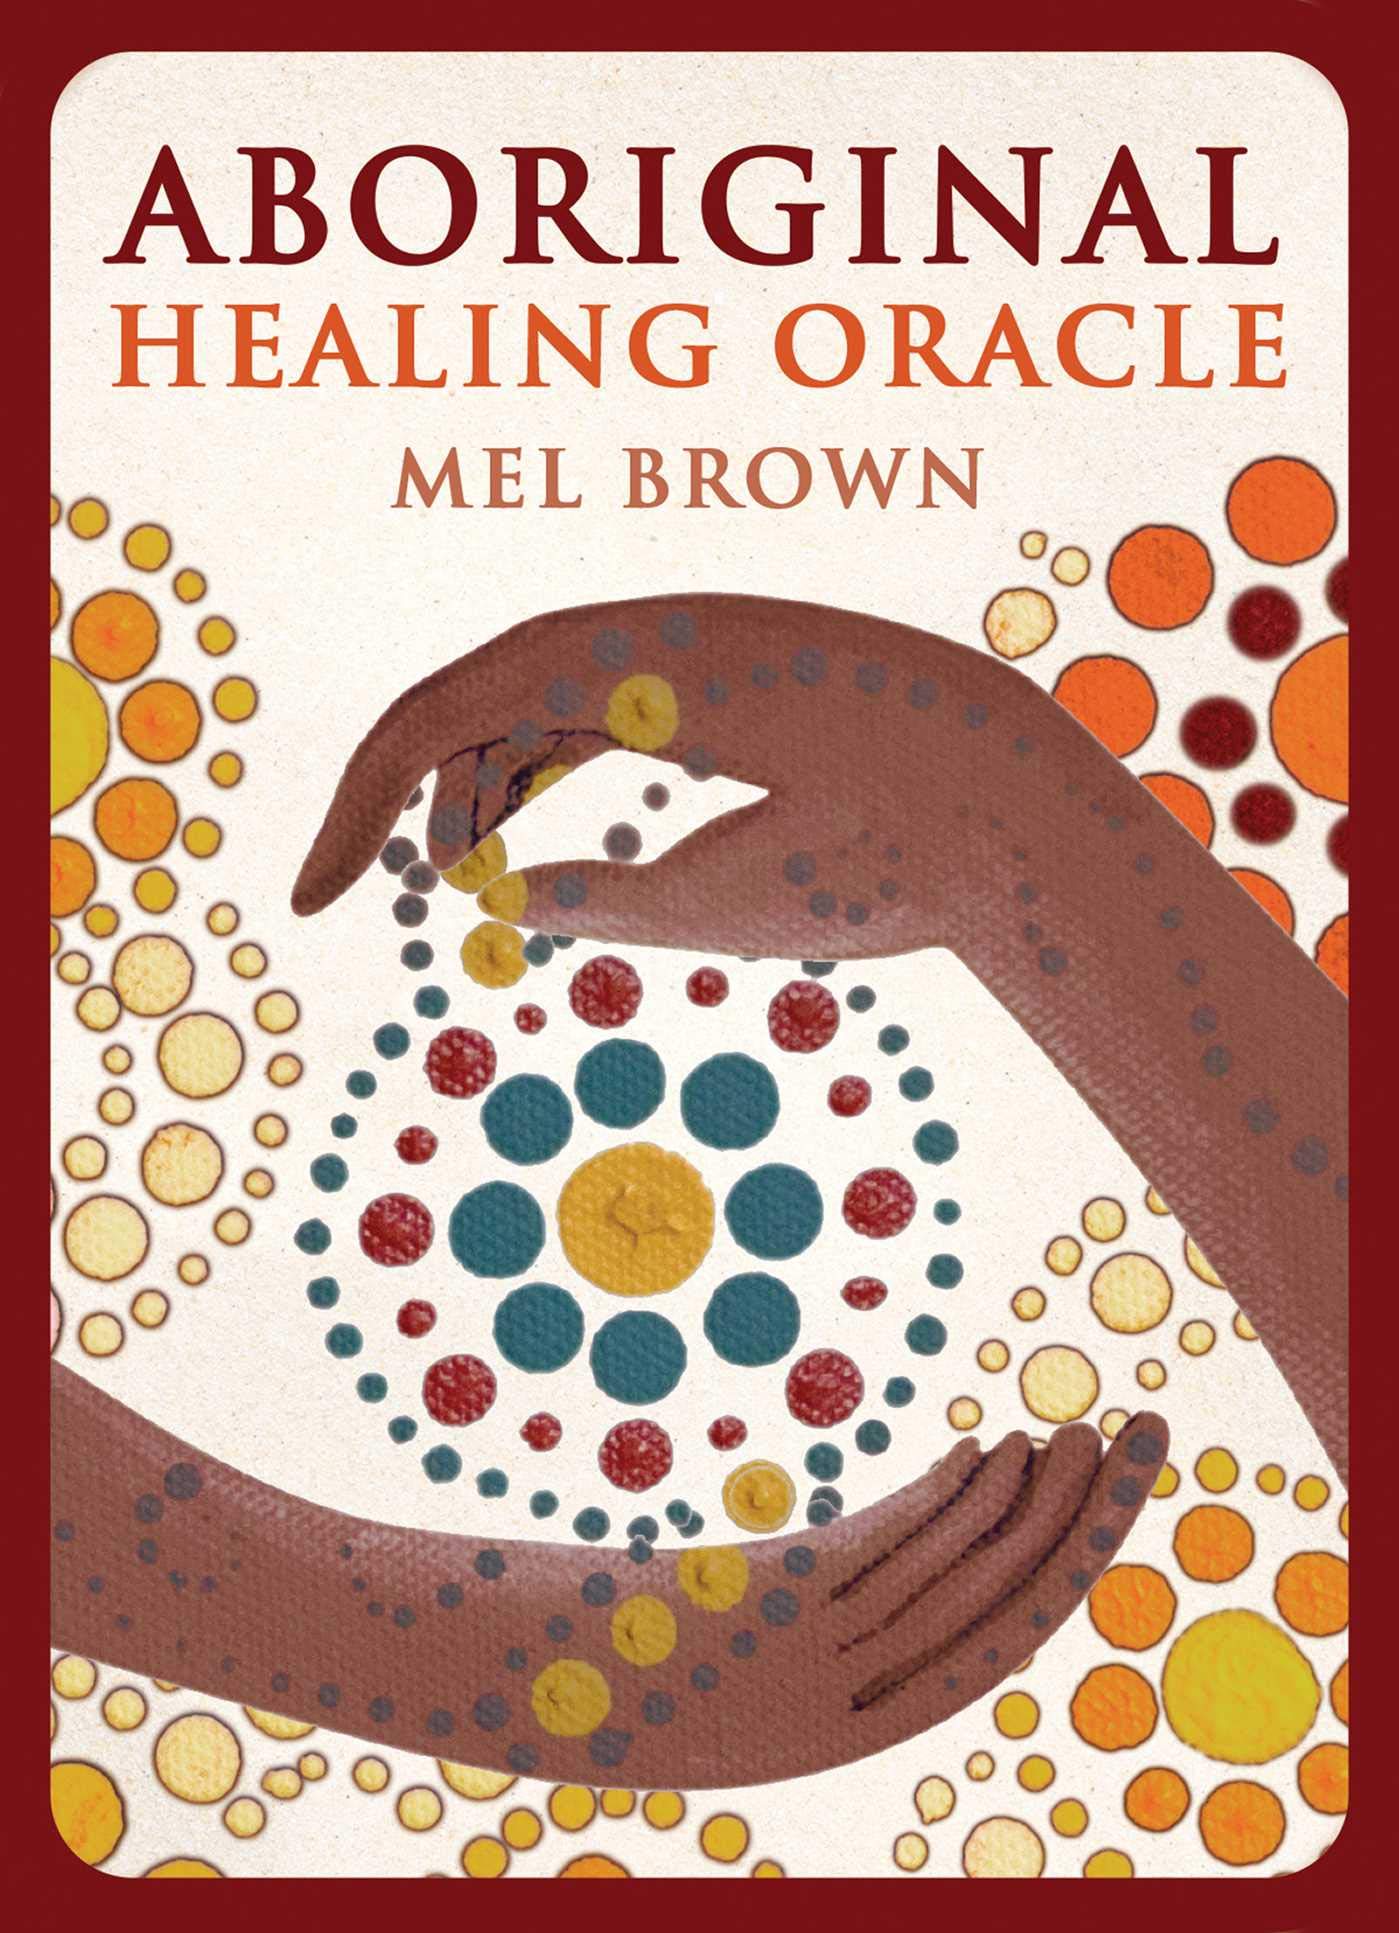 Aboriginal Healing Oracle by Mel Brown